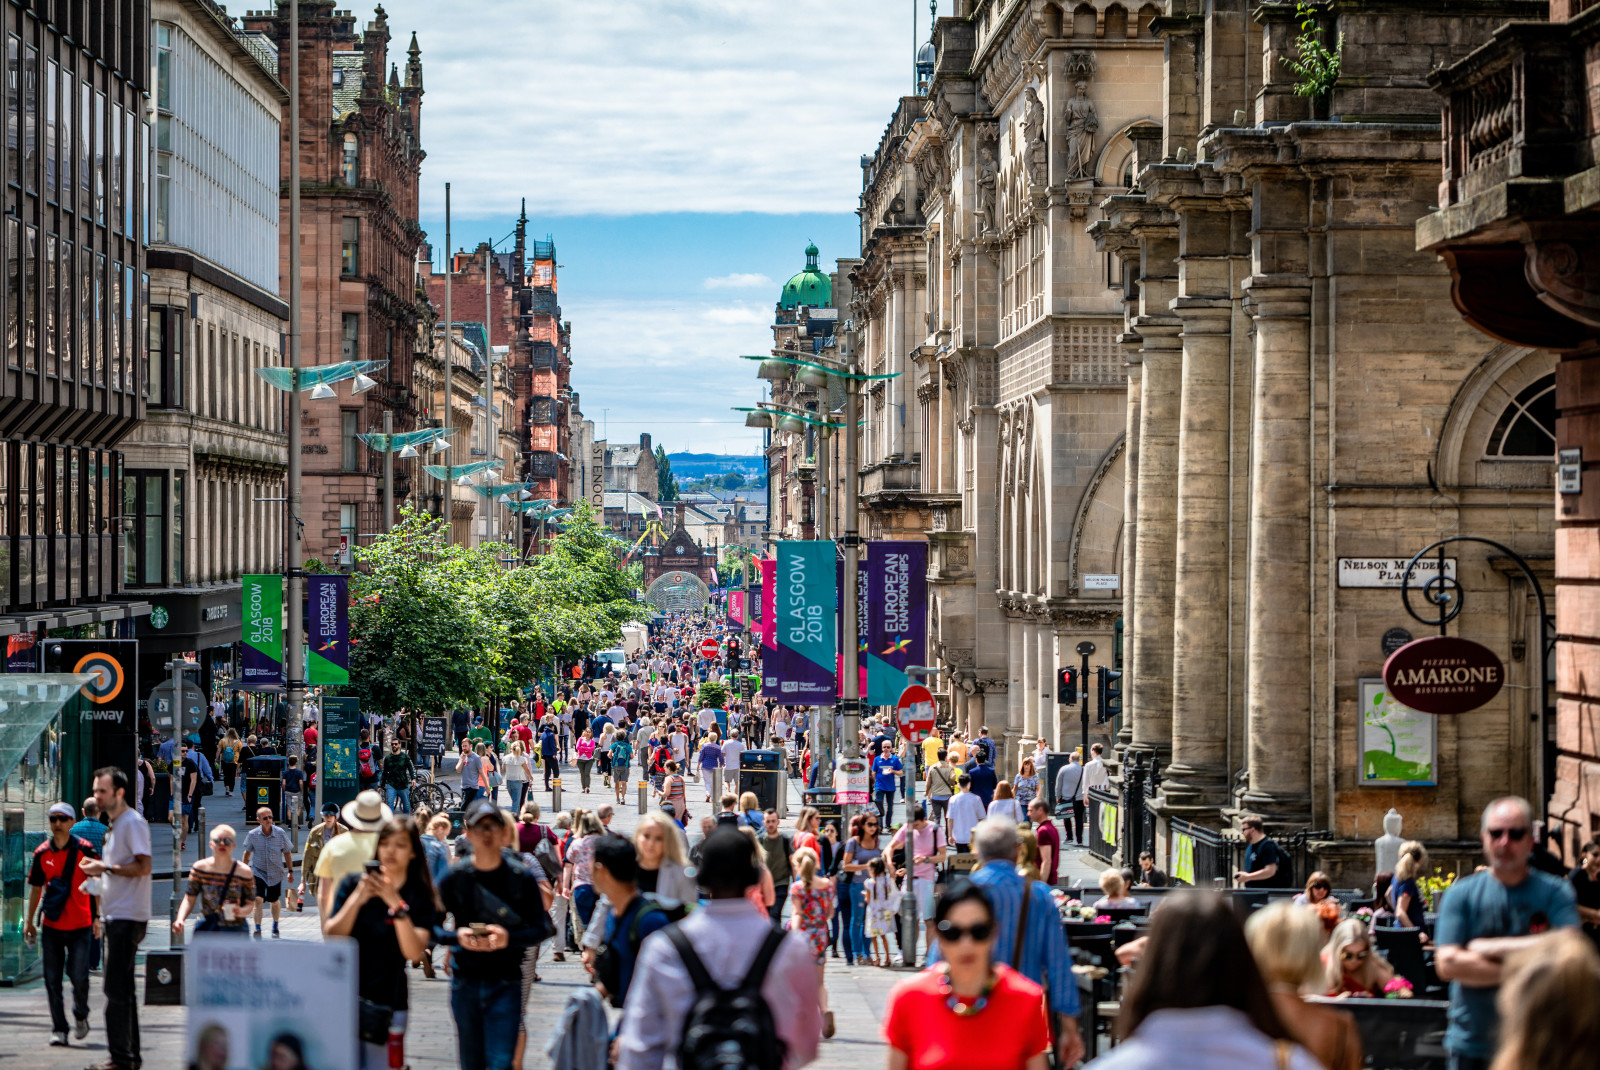 Crowds of people walking on the street alongside buildings in Glasgow